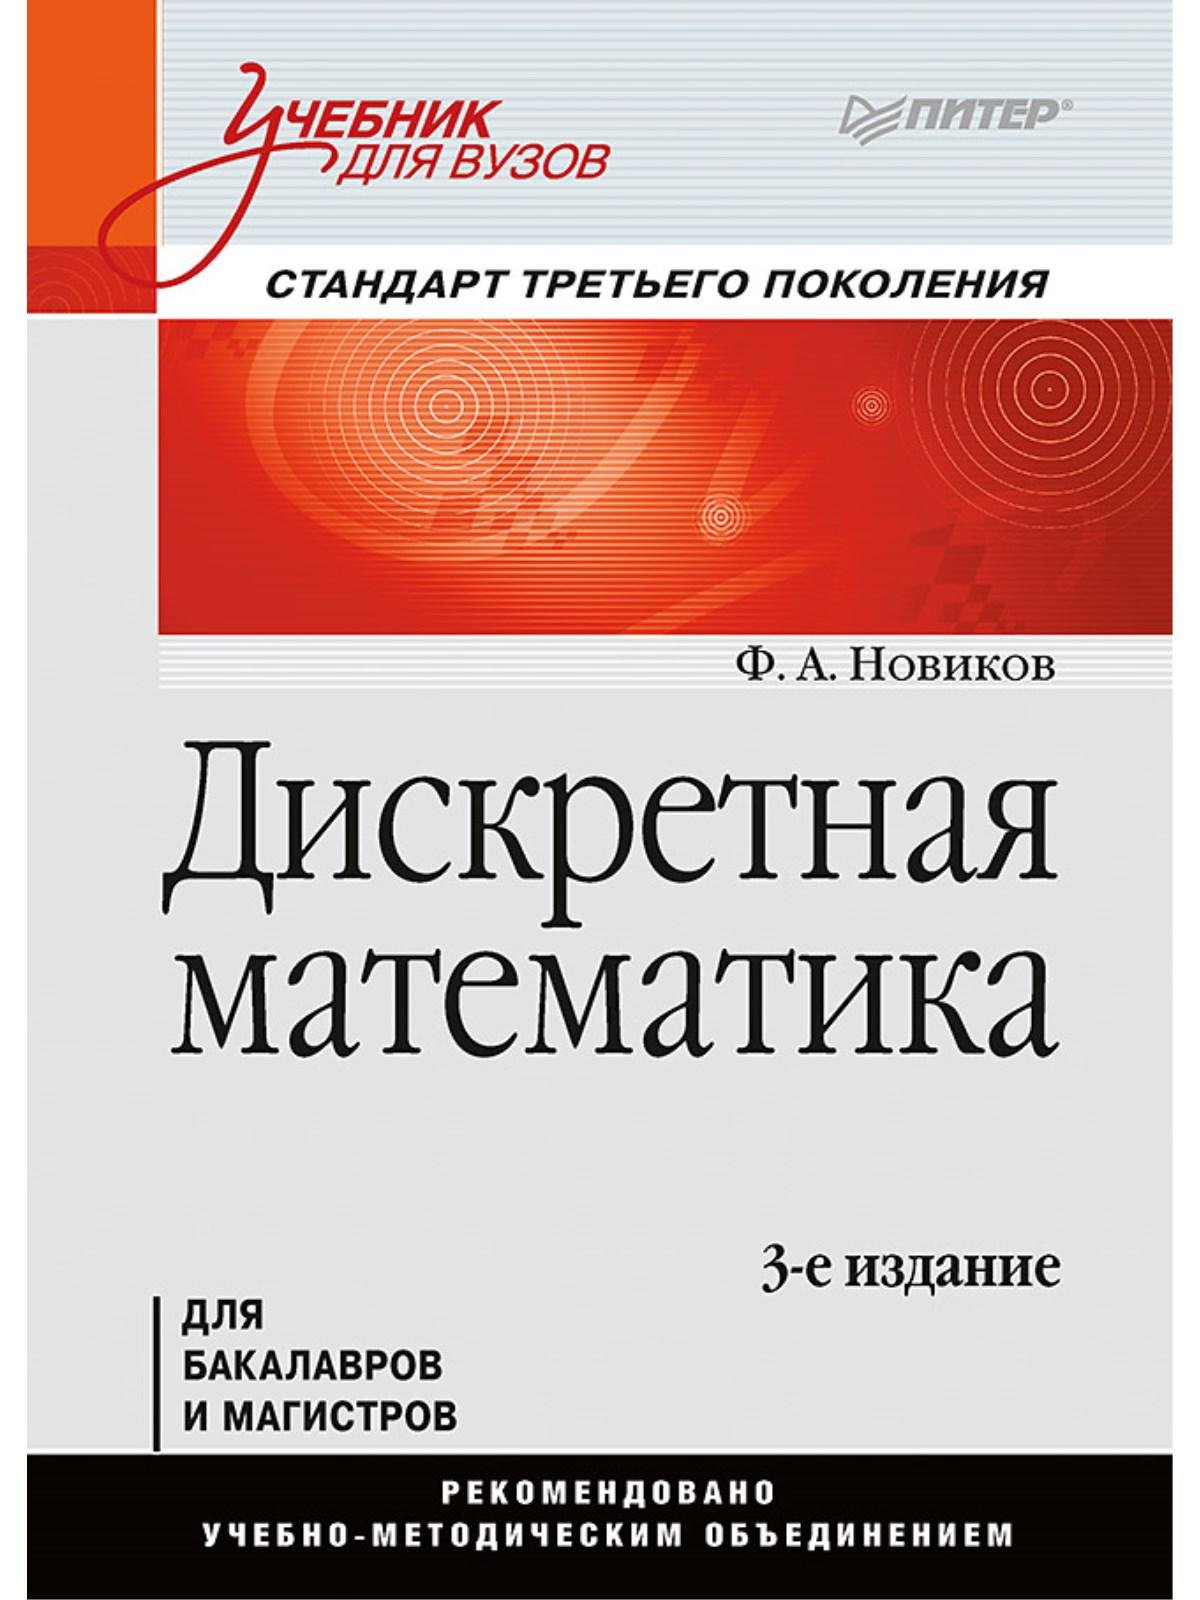 Дискретная математика: Учебник для вузов. 3-е изд. Стандарт третьего поколения